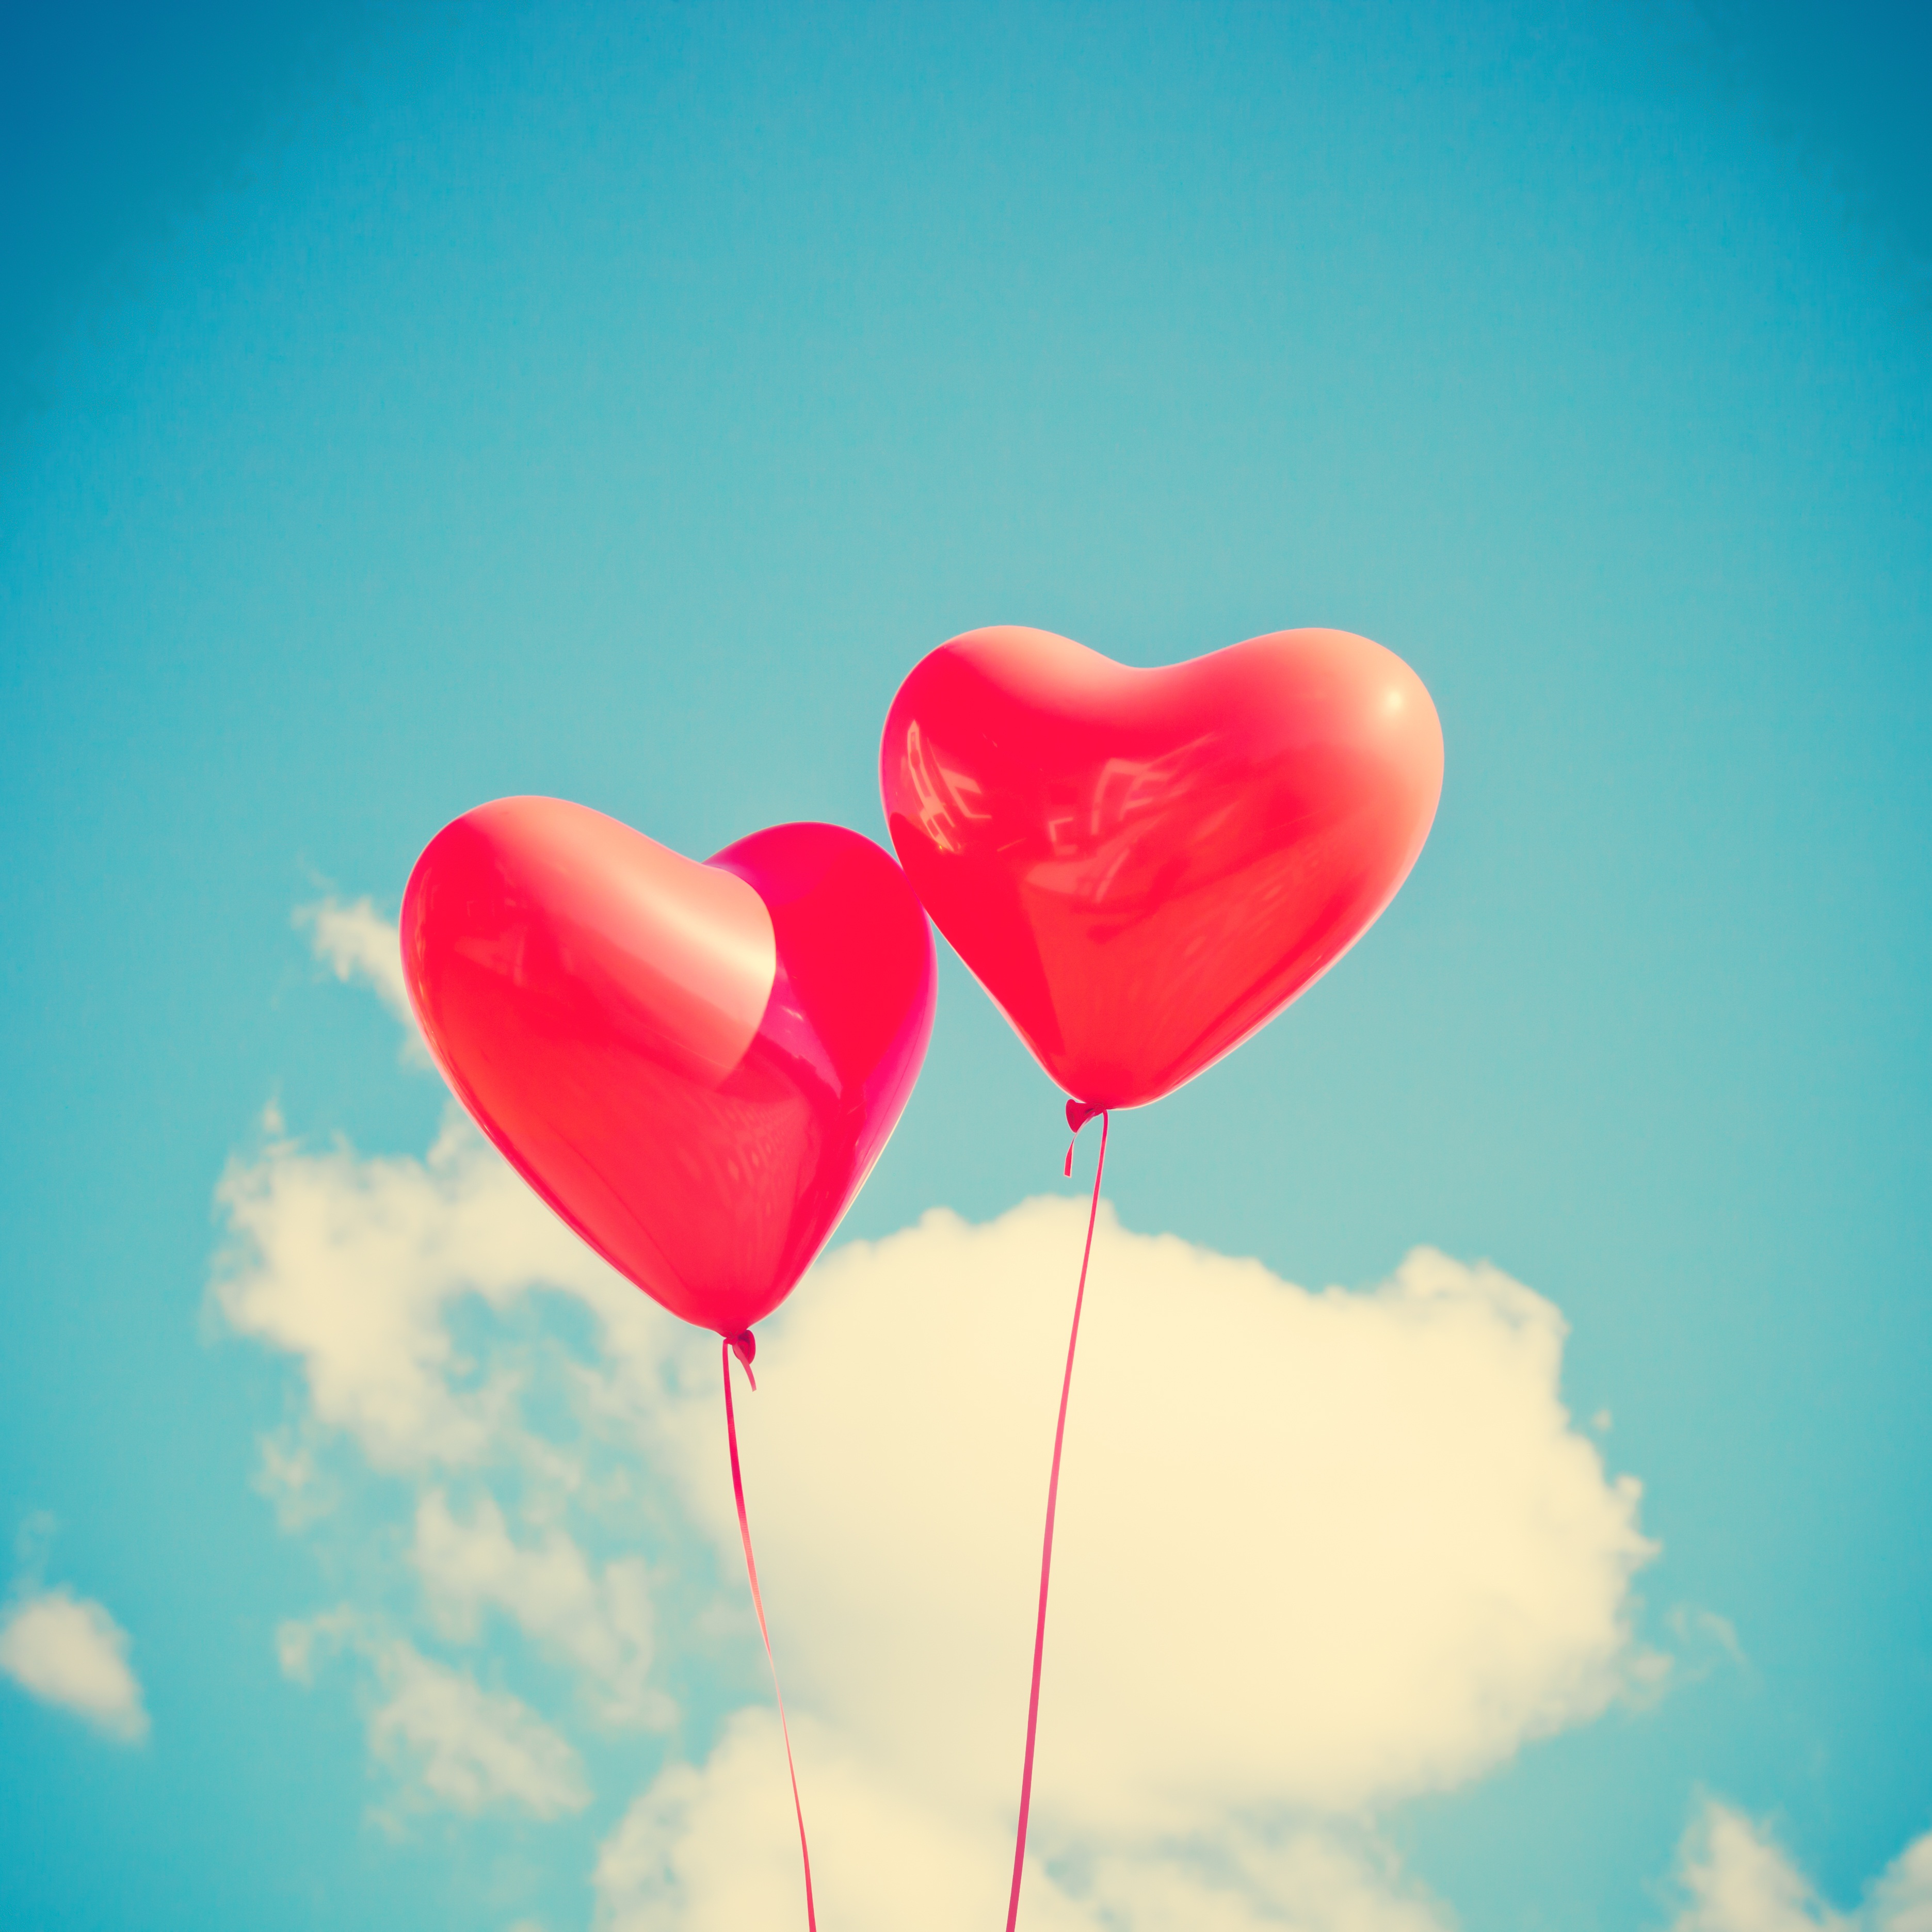 balloons, heart, love, sky, ease 32K